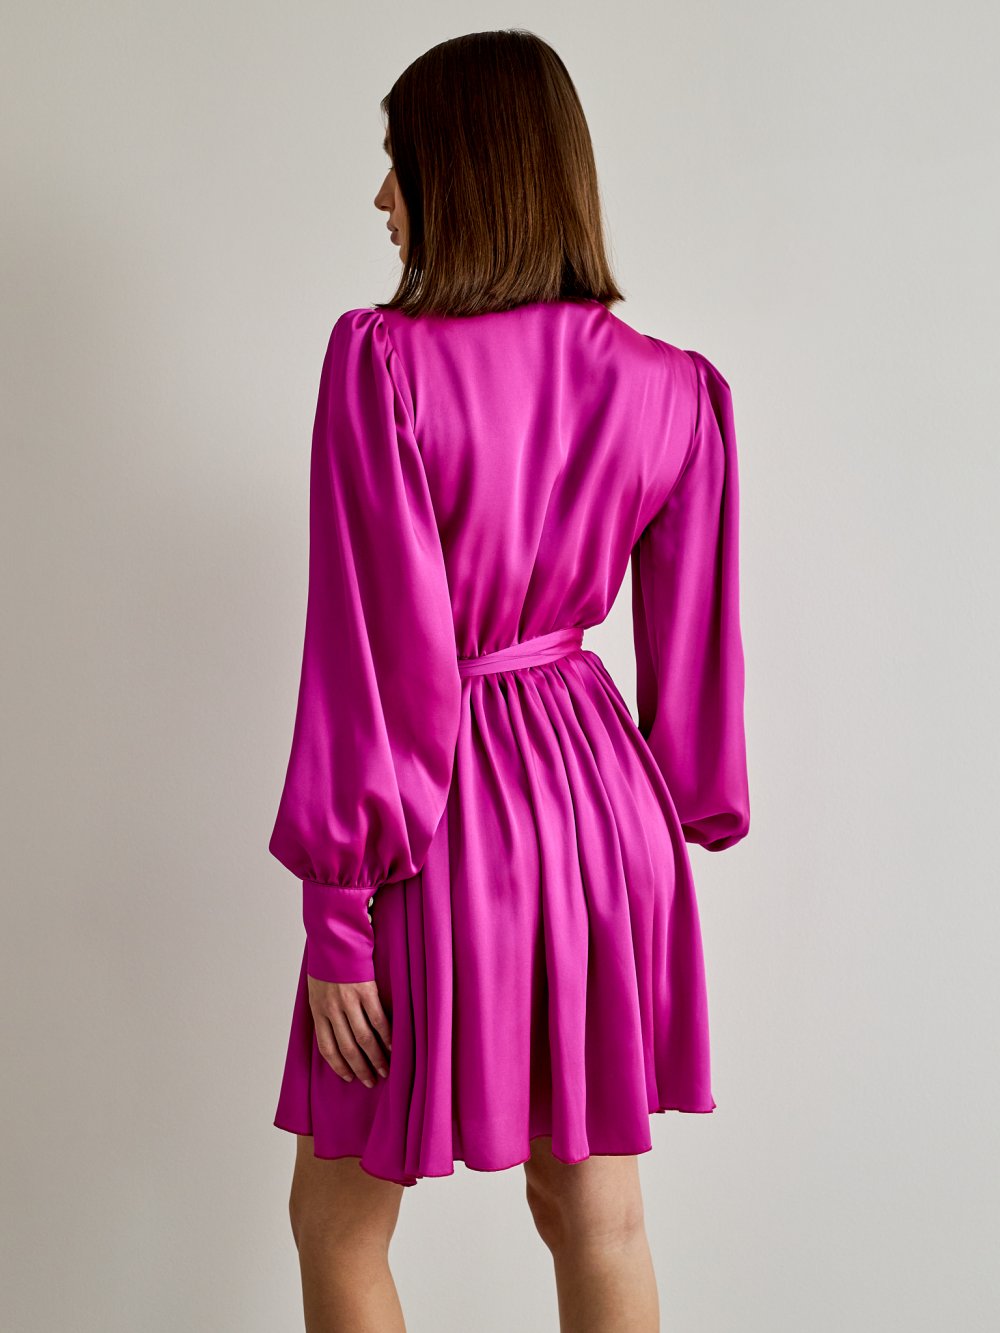 Fialovo-ružové šaty Francesca